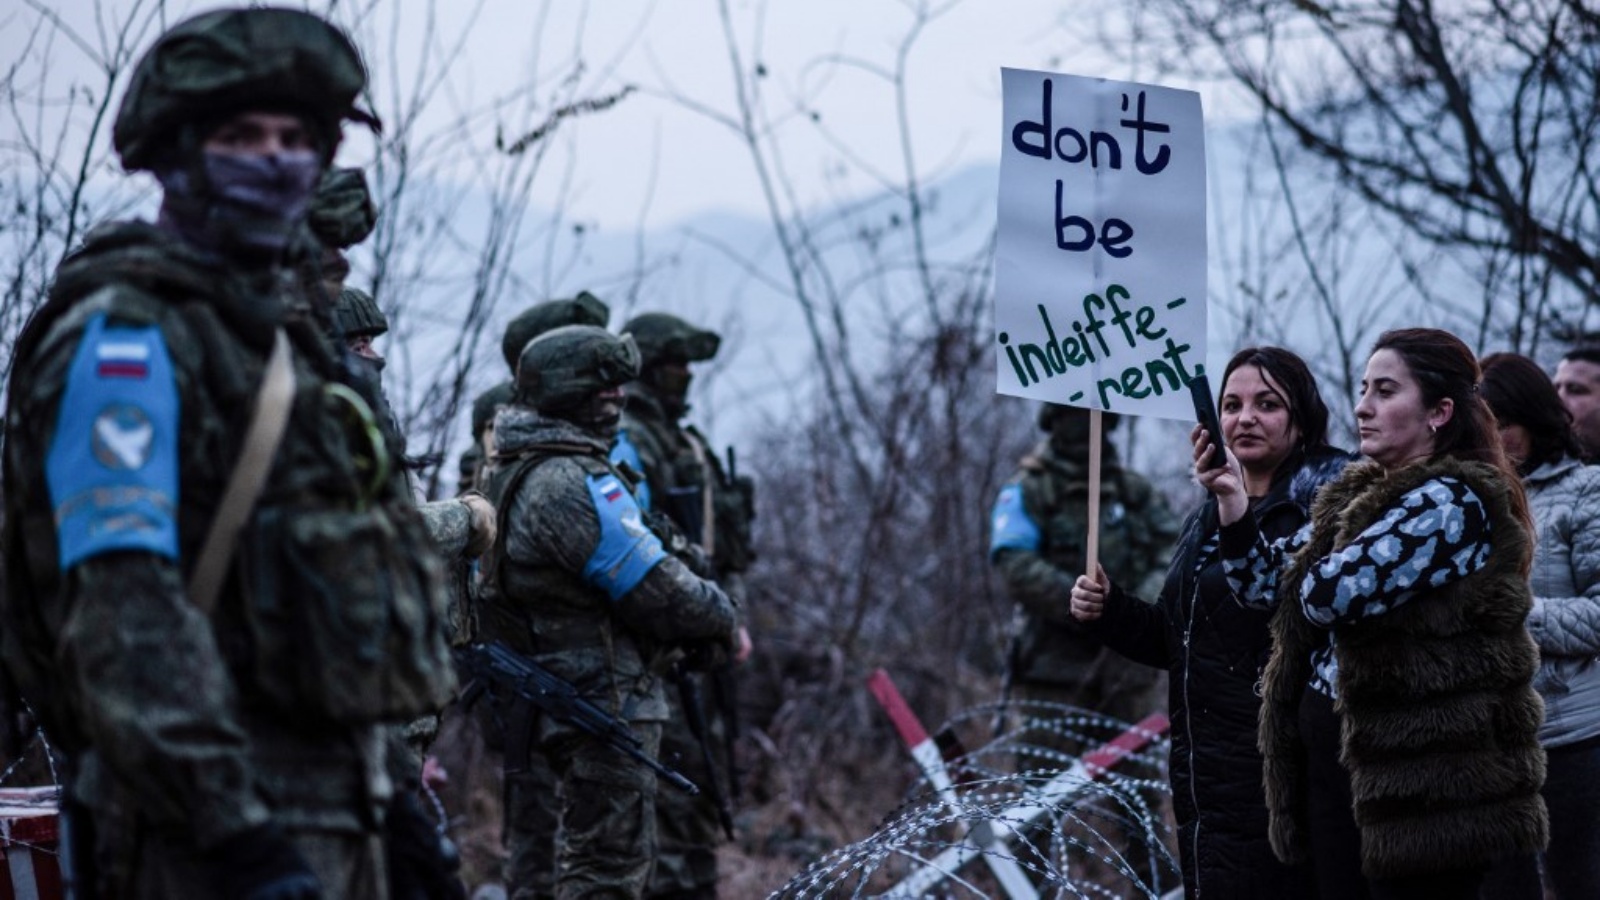 متظاهرون يقفون أمام قوات حفظ السلام الروسية على الطريق خارج ستيباناكيرت ، عاصمة منطقة ناغورنو كاراباخ المزعومة من جانب أذربيجان، في 24 ديسمبر 2022